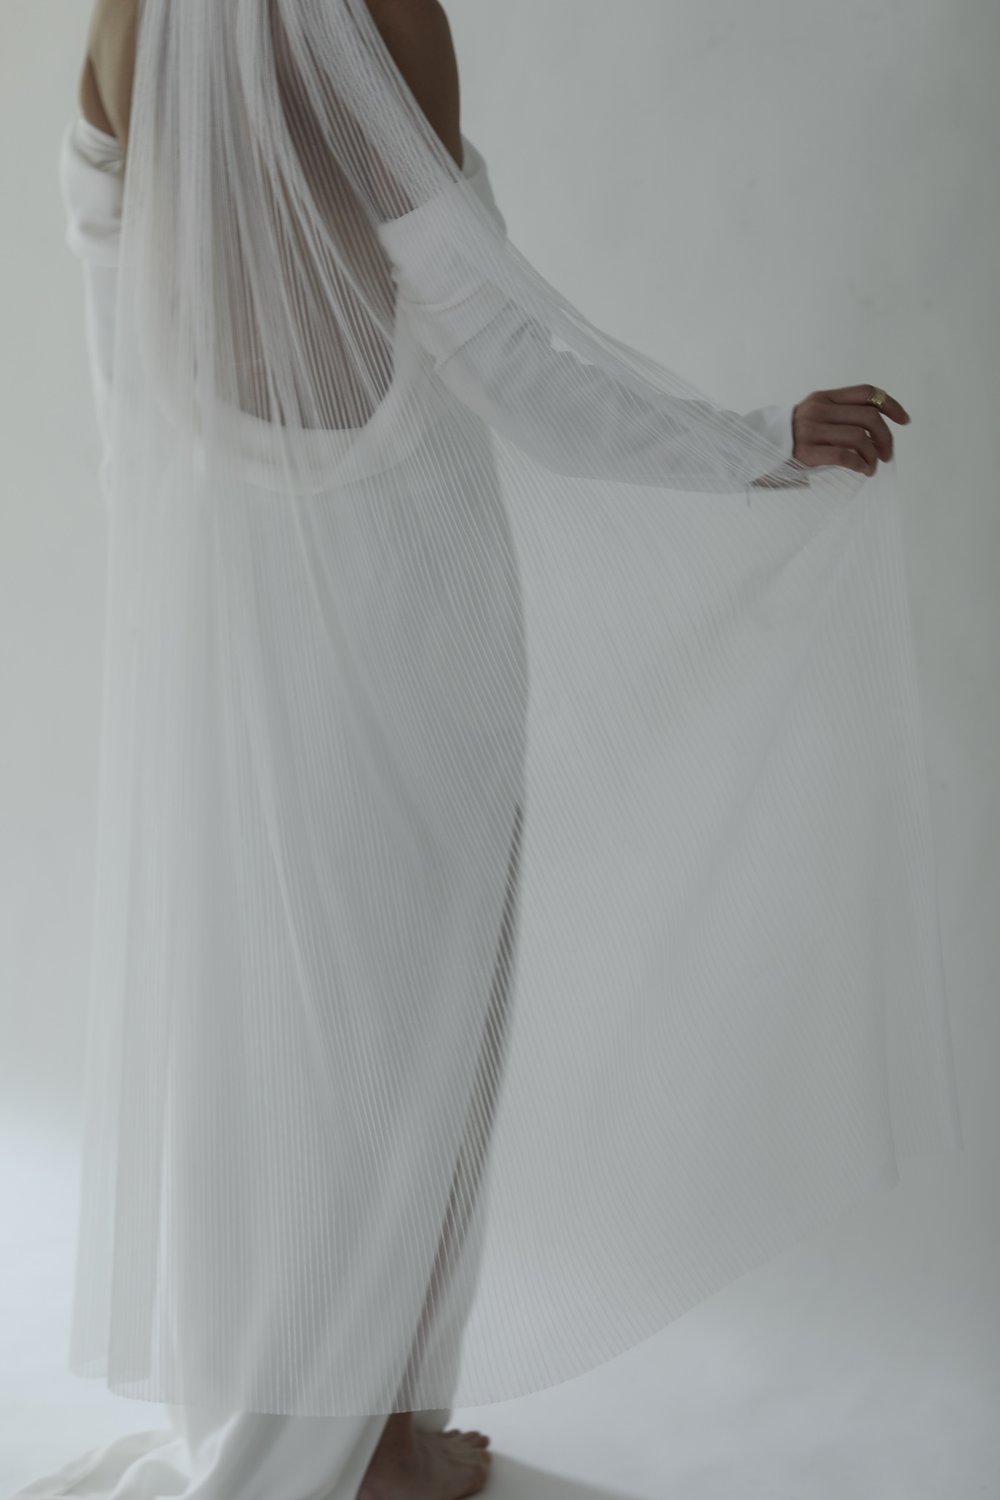 veil weights: a bridal necessity #weddingdesigner #bridalstylist #veil, veil  weights